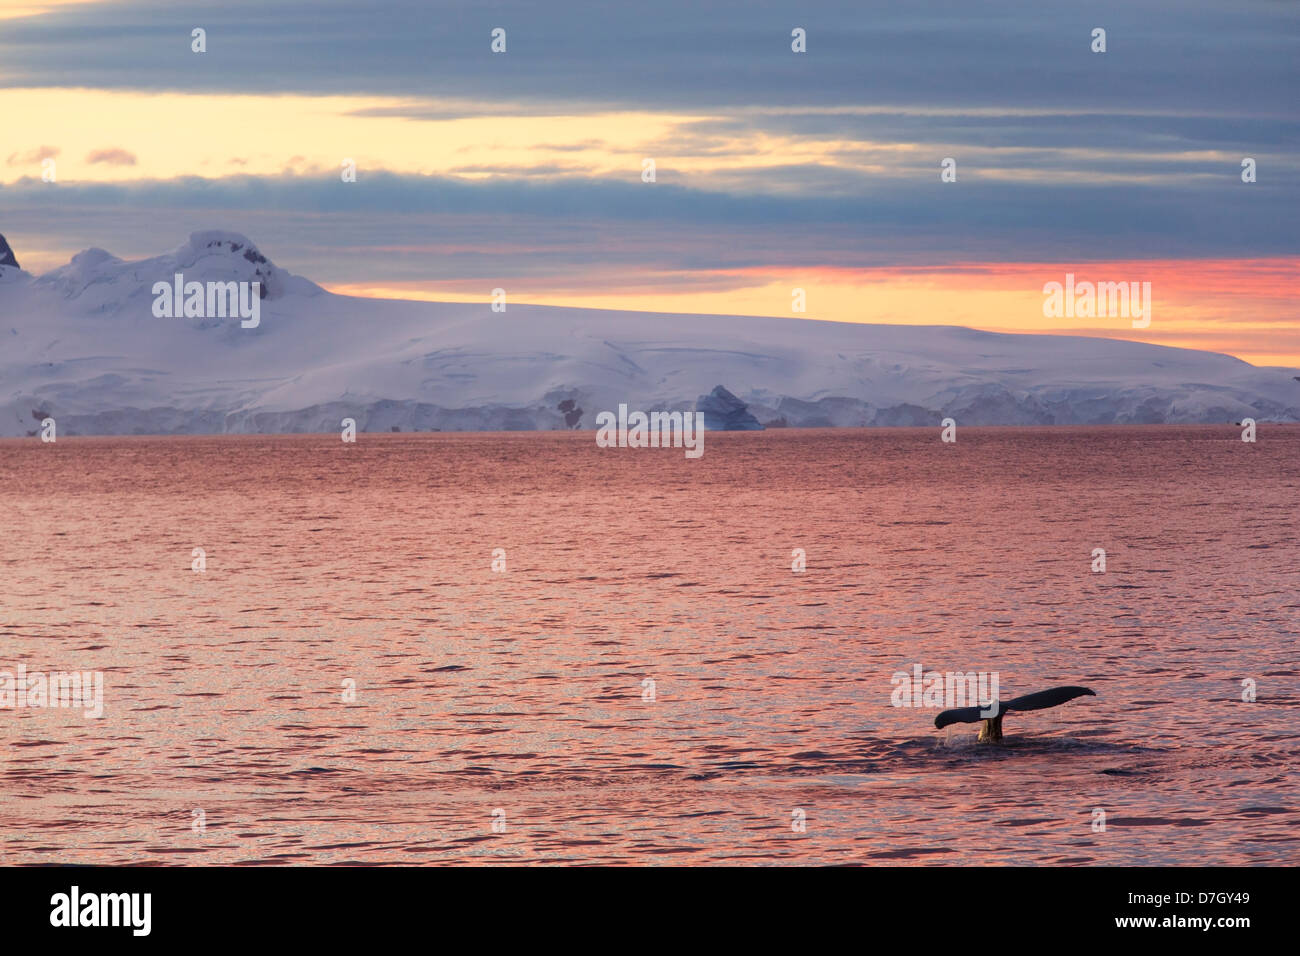 Buckelwal (Impressionen Novaeangliae) bei Sonnenuntergang / Sonnenaufgang wie wir unterhalb des Polarkreises, Antarktis Reisen. Stockfoto